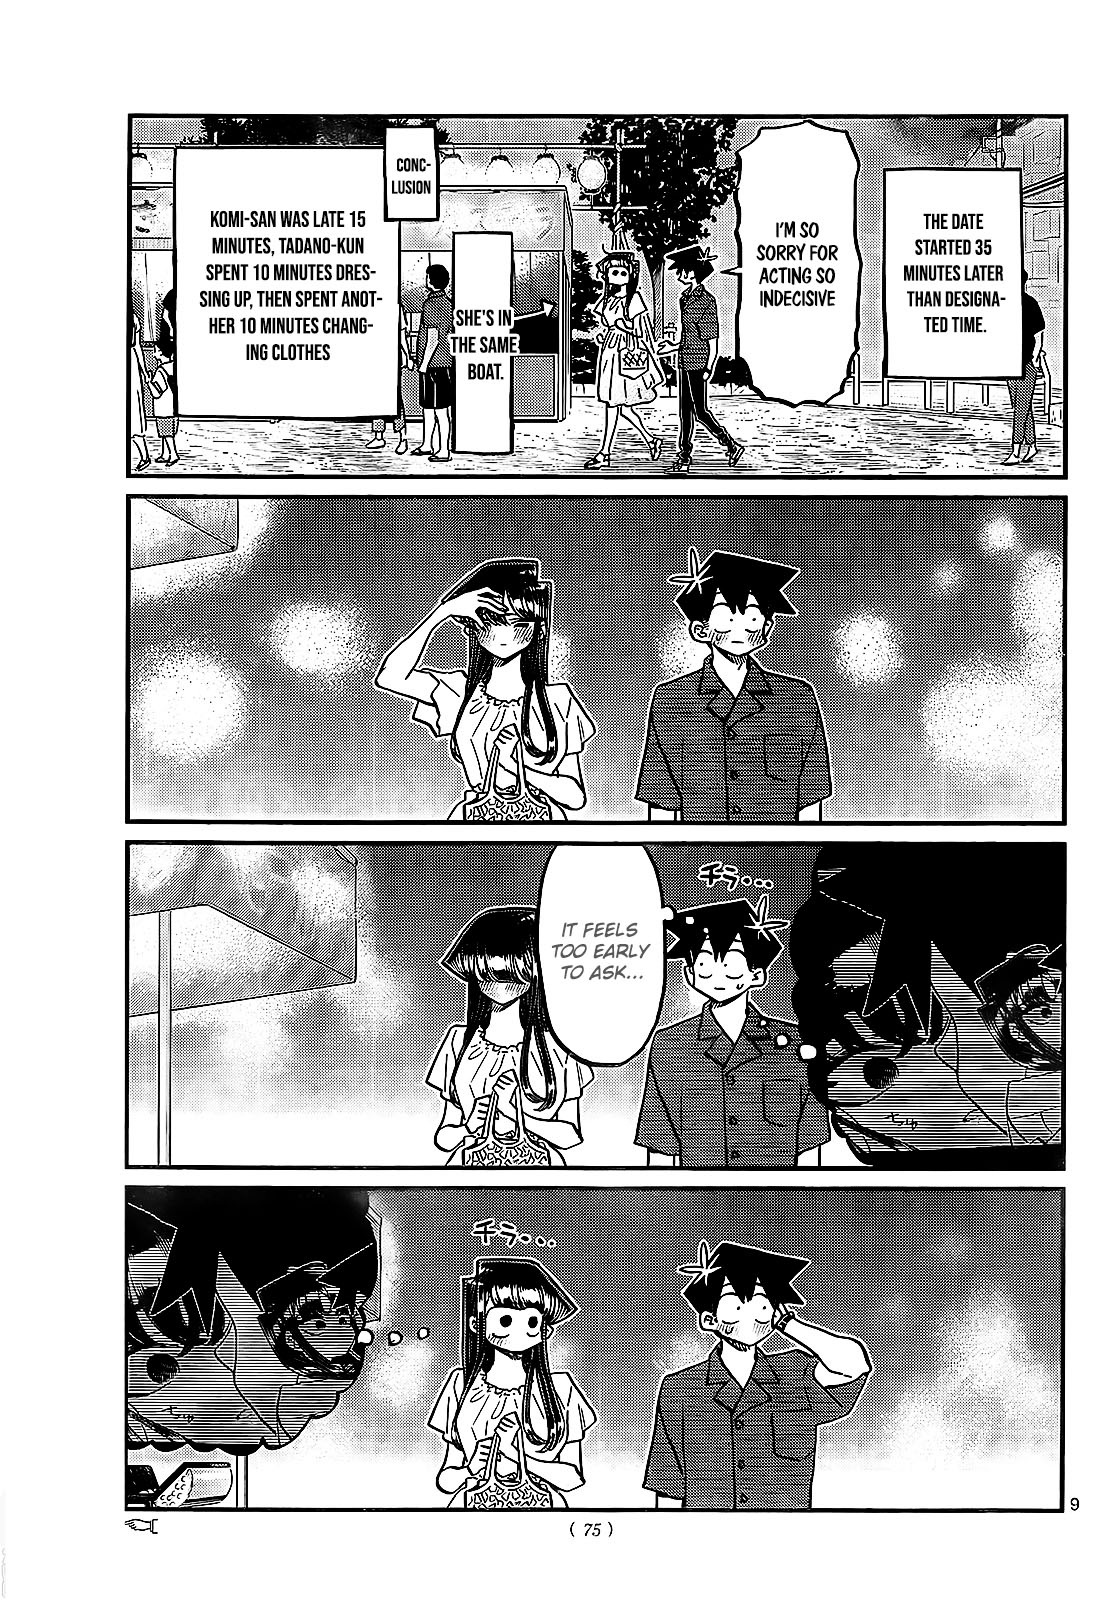 Komi-san wa, Comyushou desu. Capítulo 411 - Manga Online